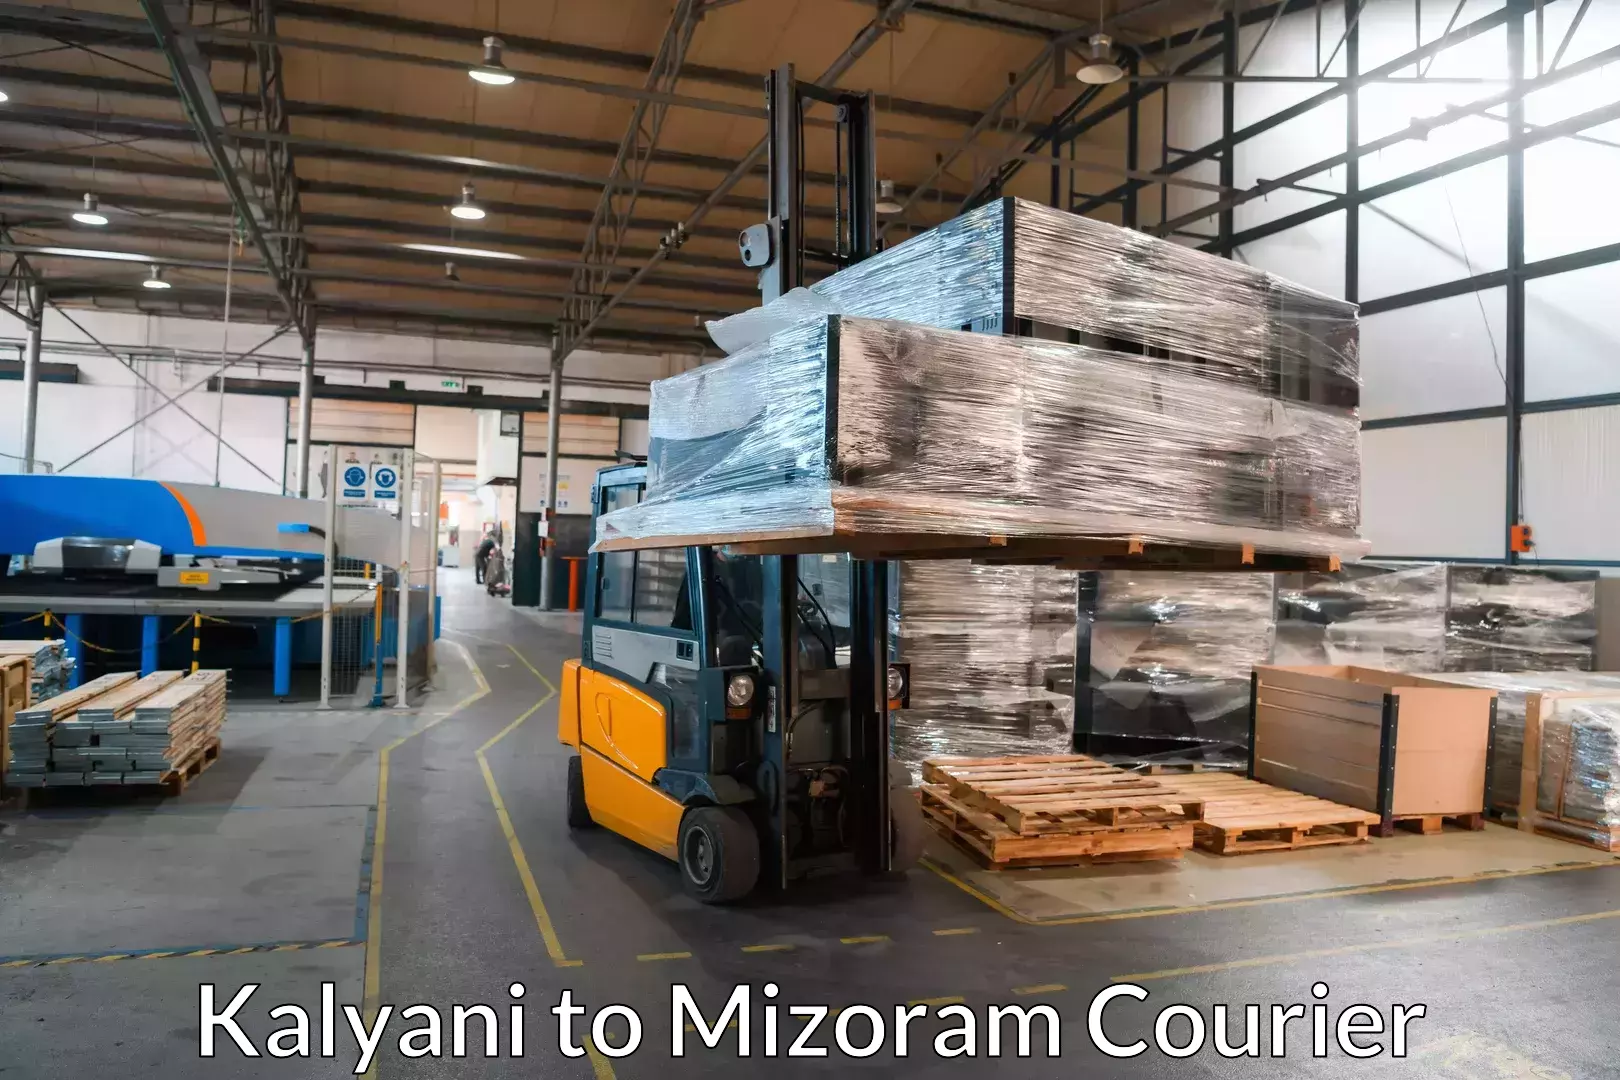 Furniture relocation experts Kalyani to Mizoram